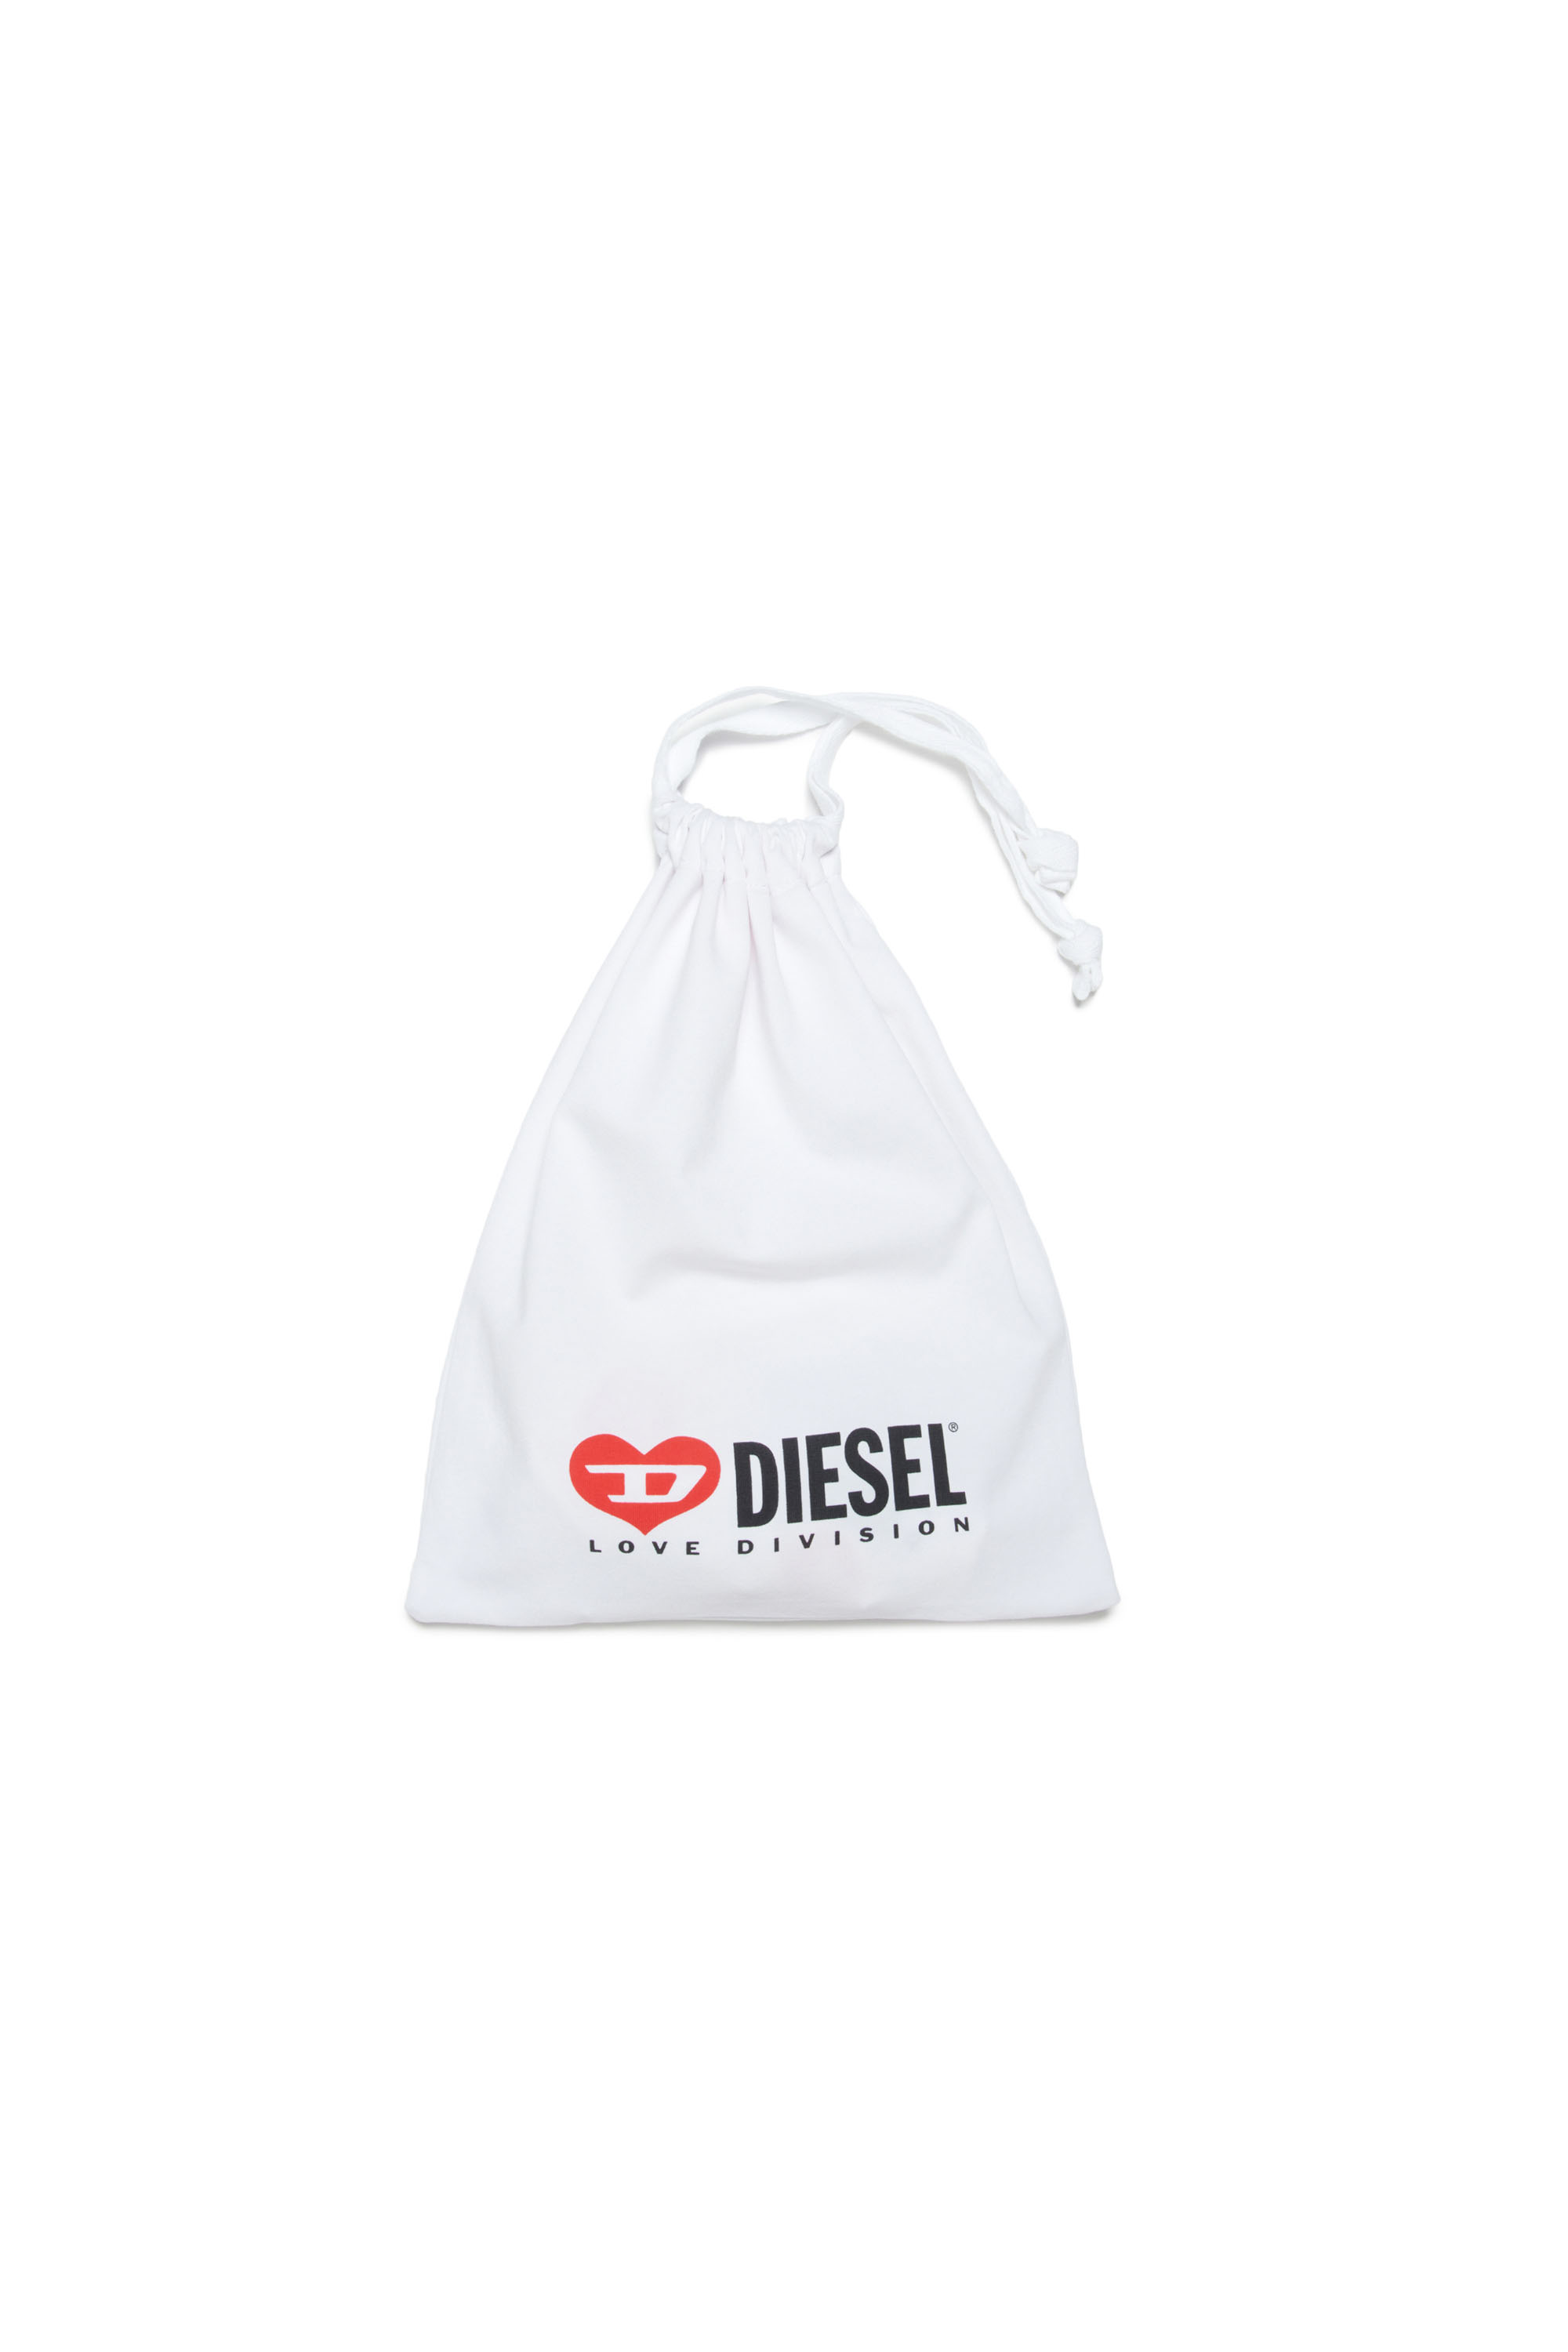 Diesel - ULOVE-NB, Blanc - Image 4